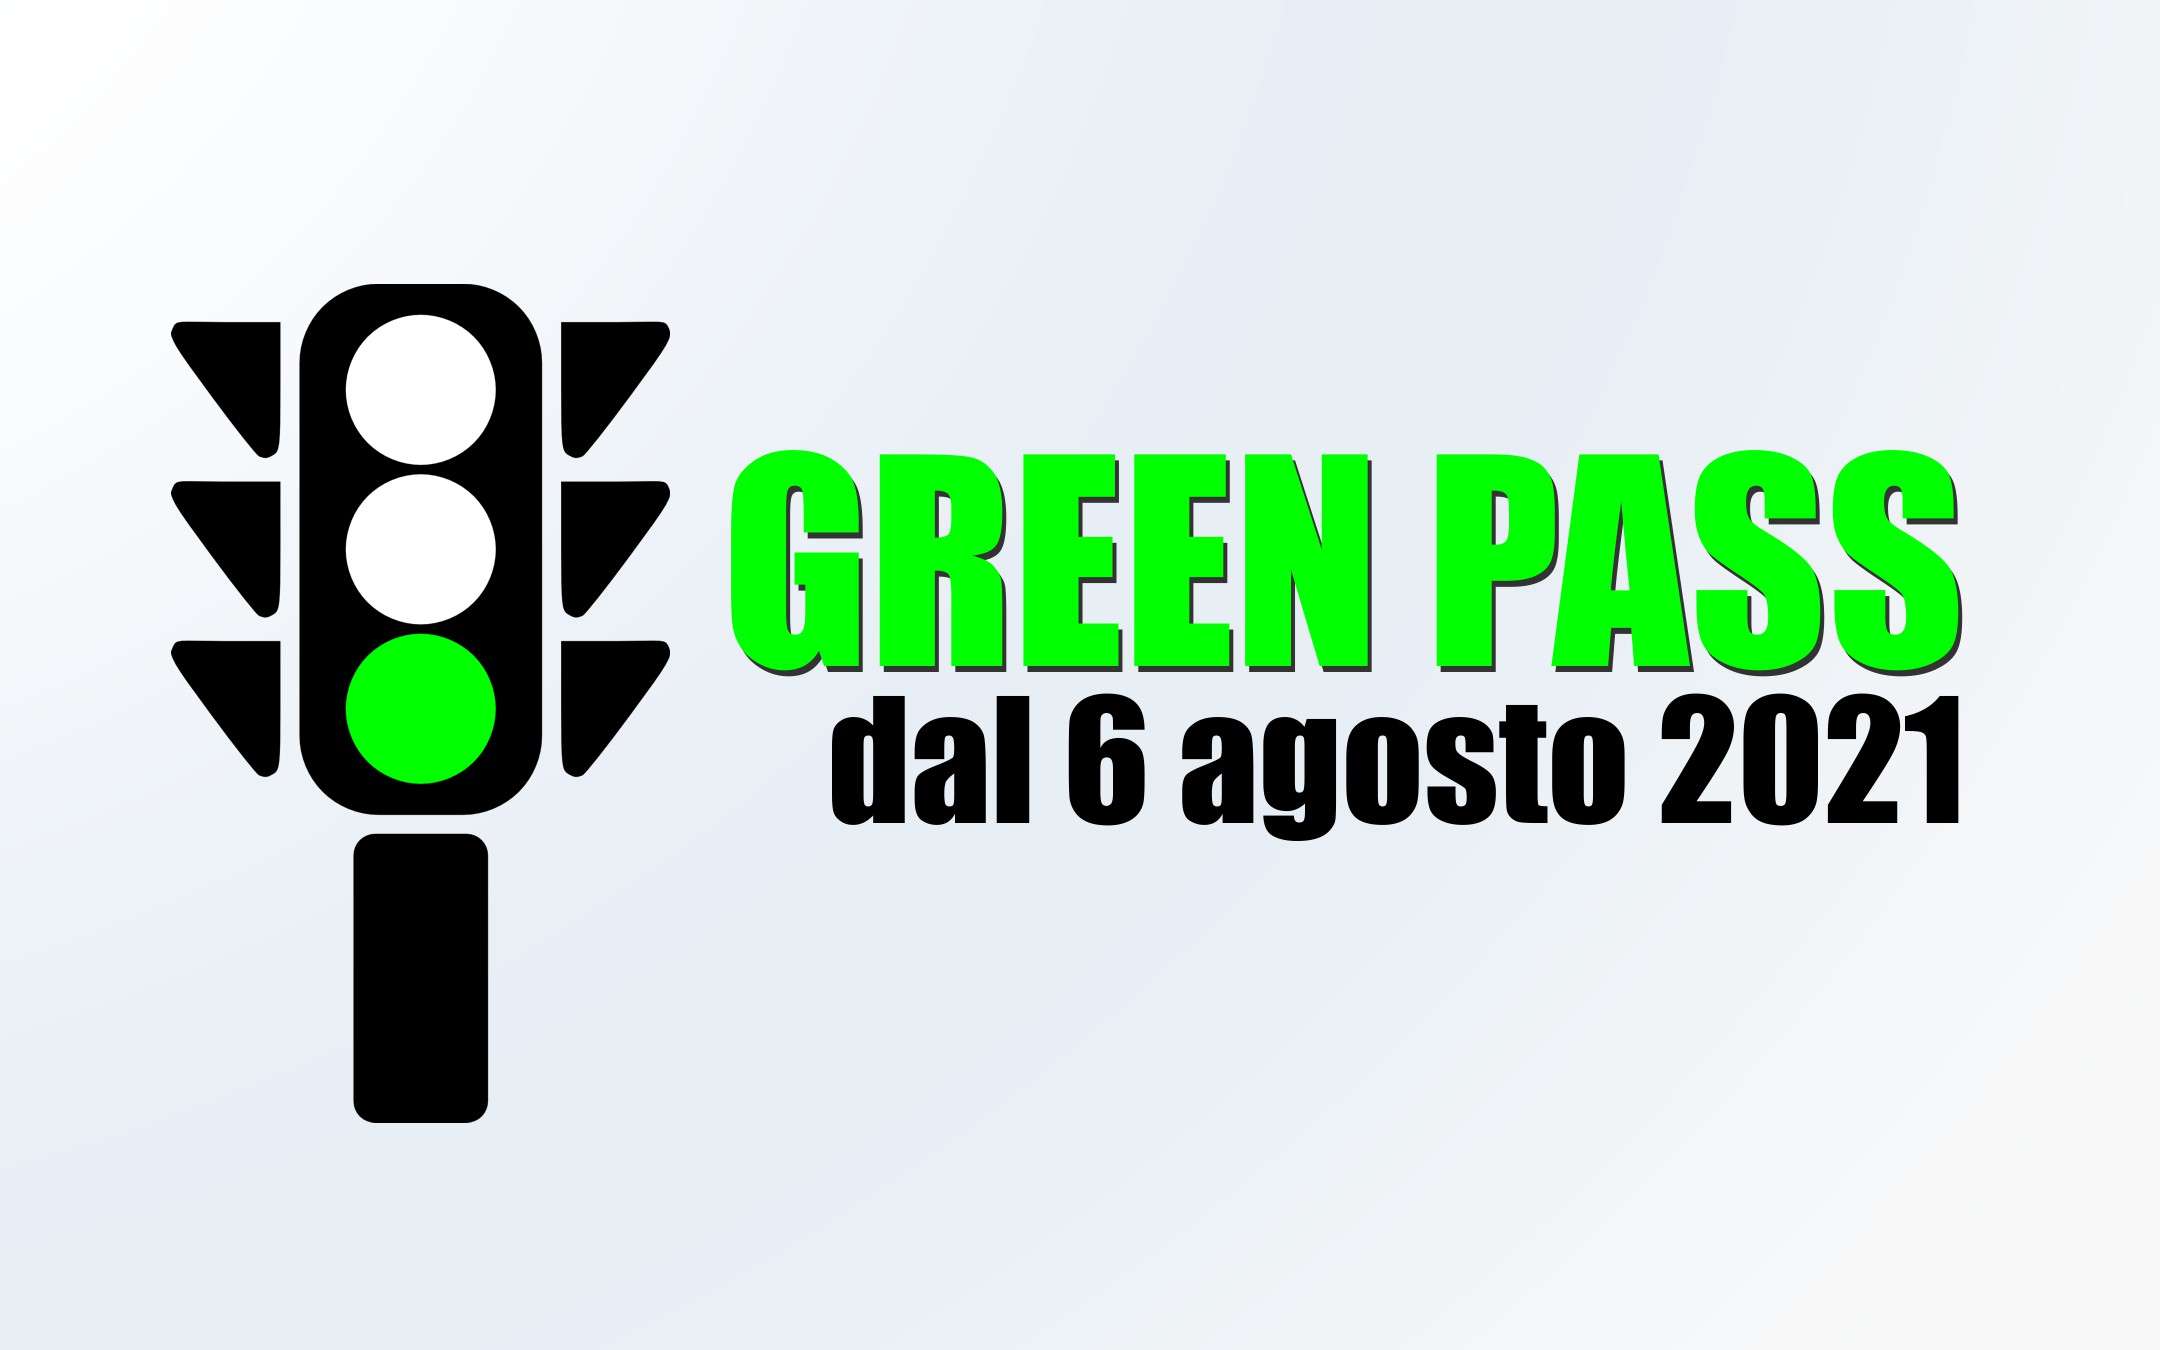 Green Pass: 6 Agosto 2021